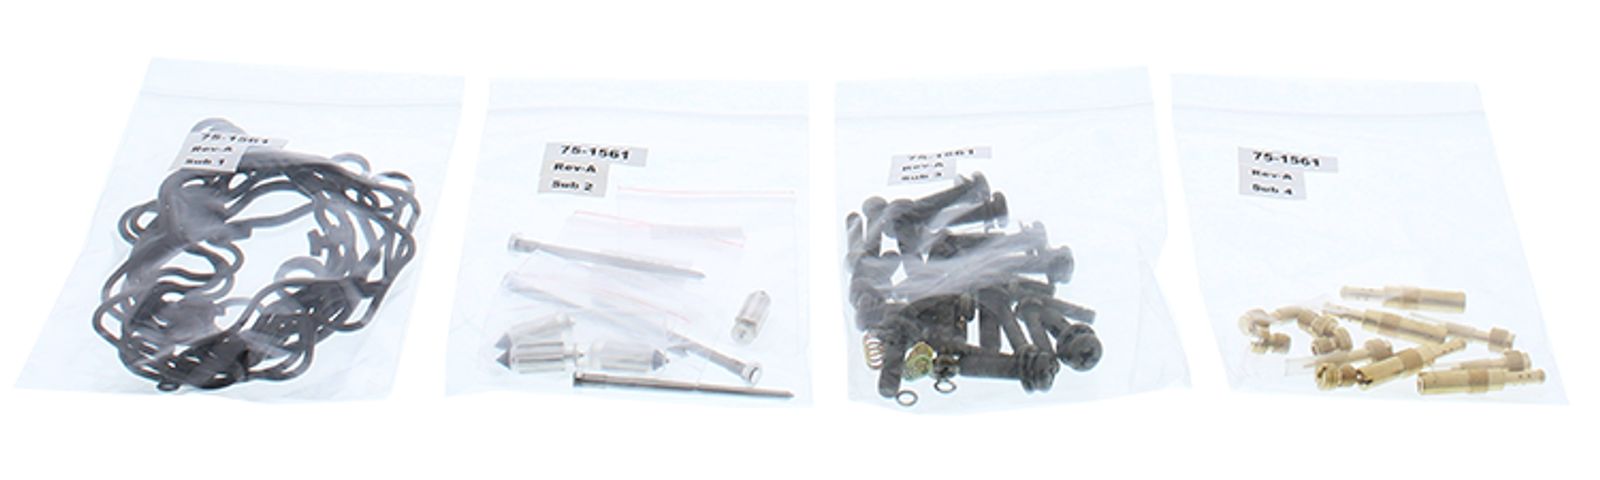 Wrp Carb Repair Kits - WRP261667 image